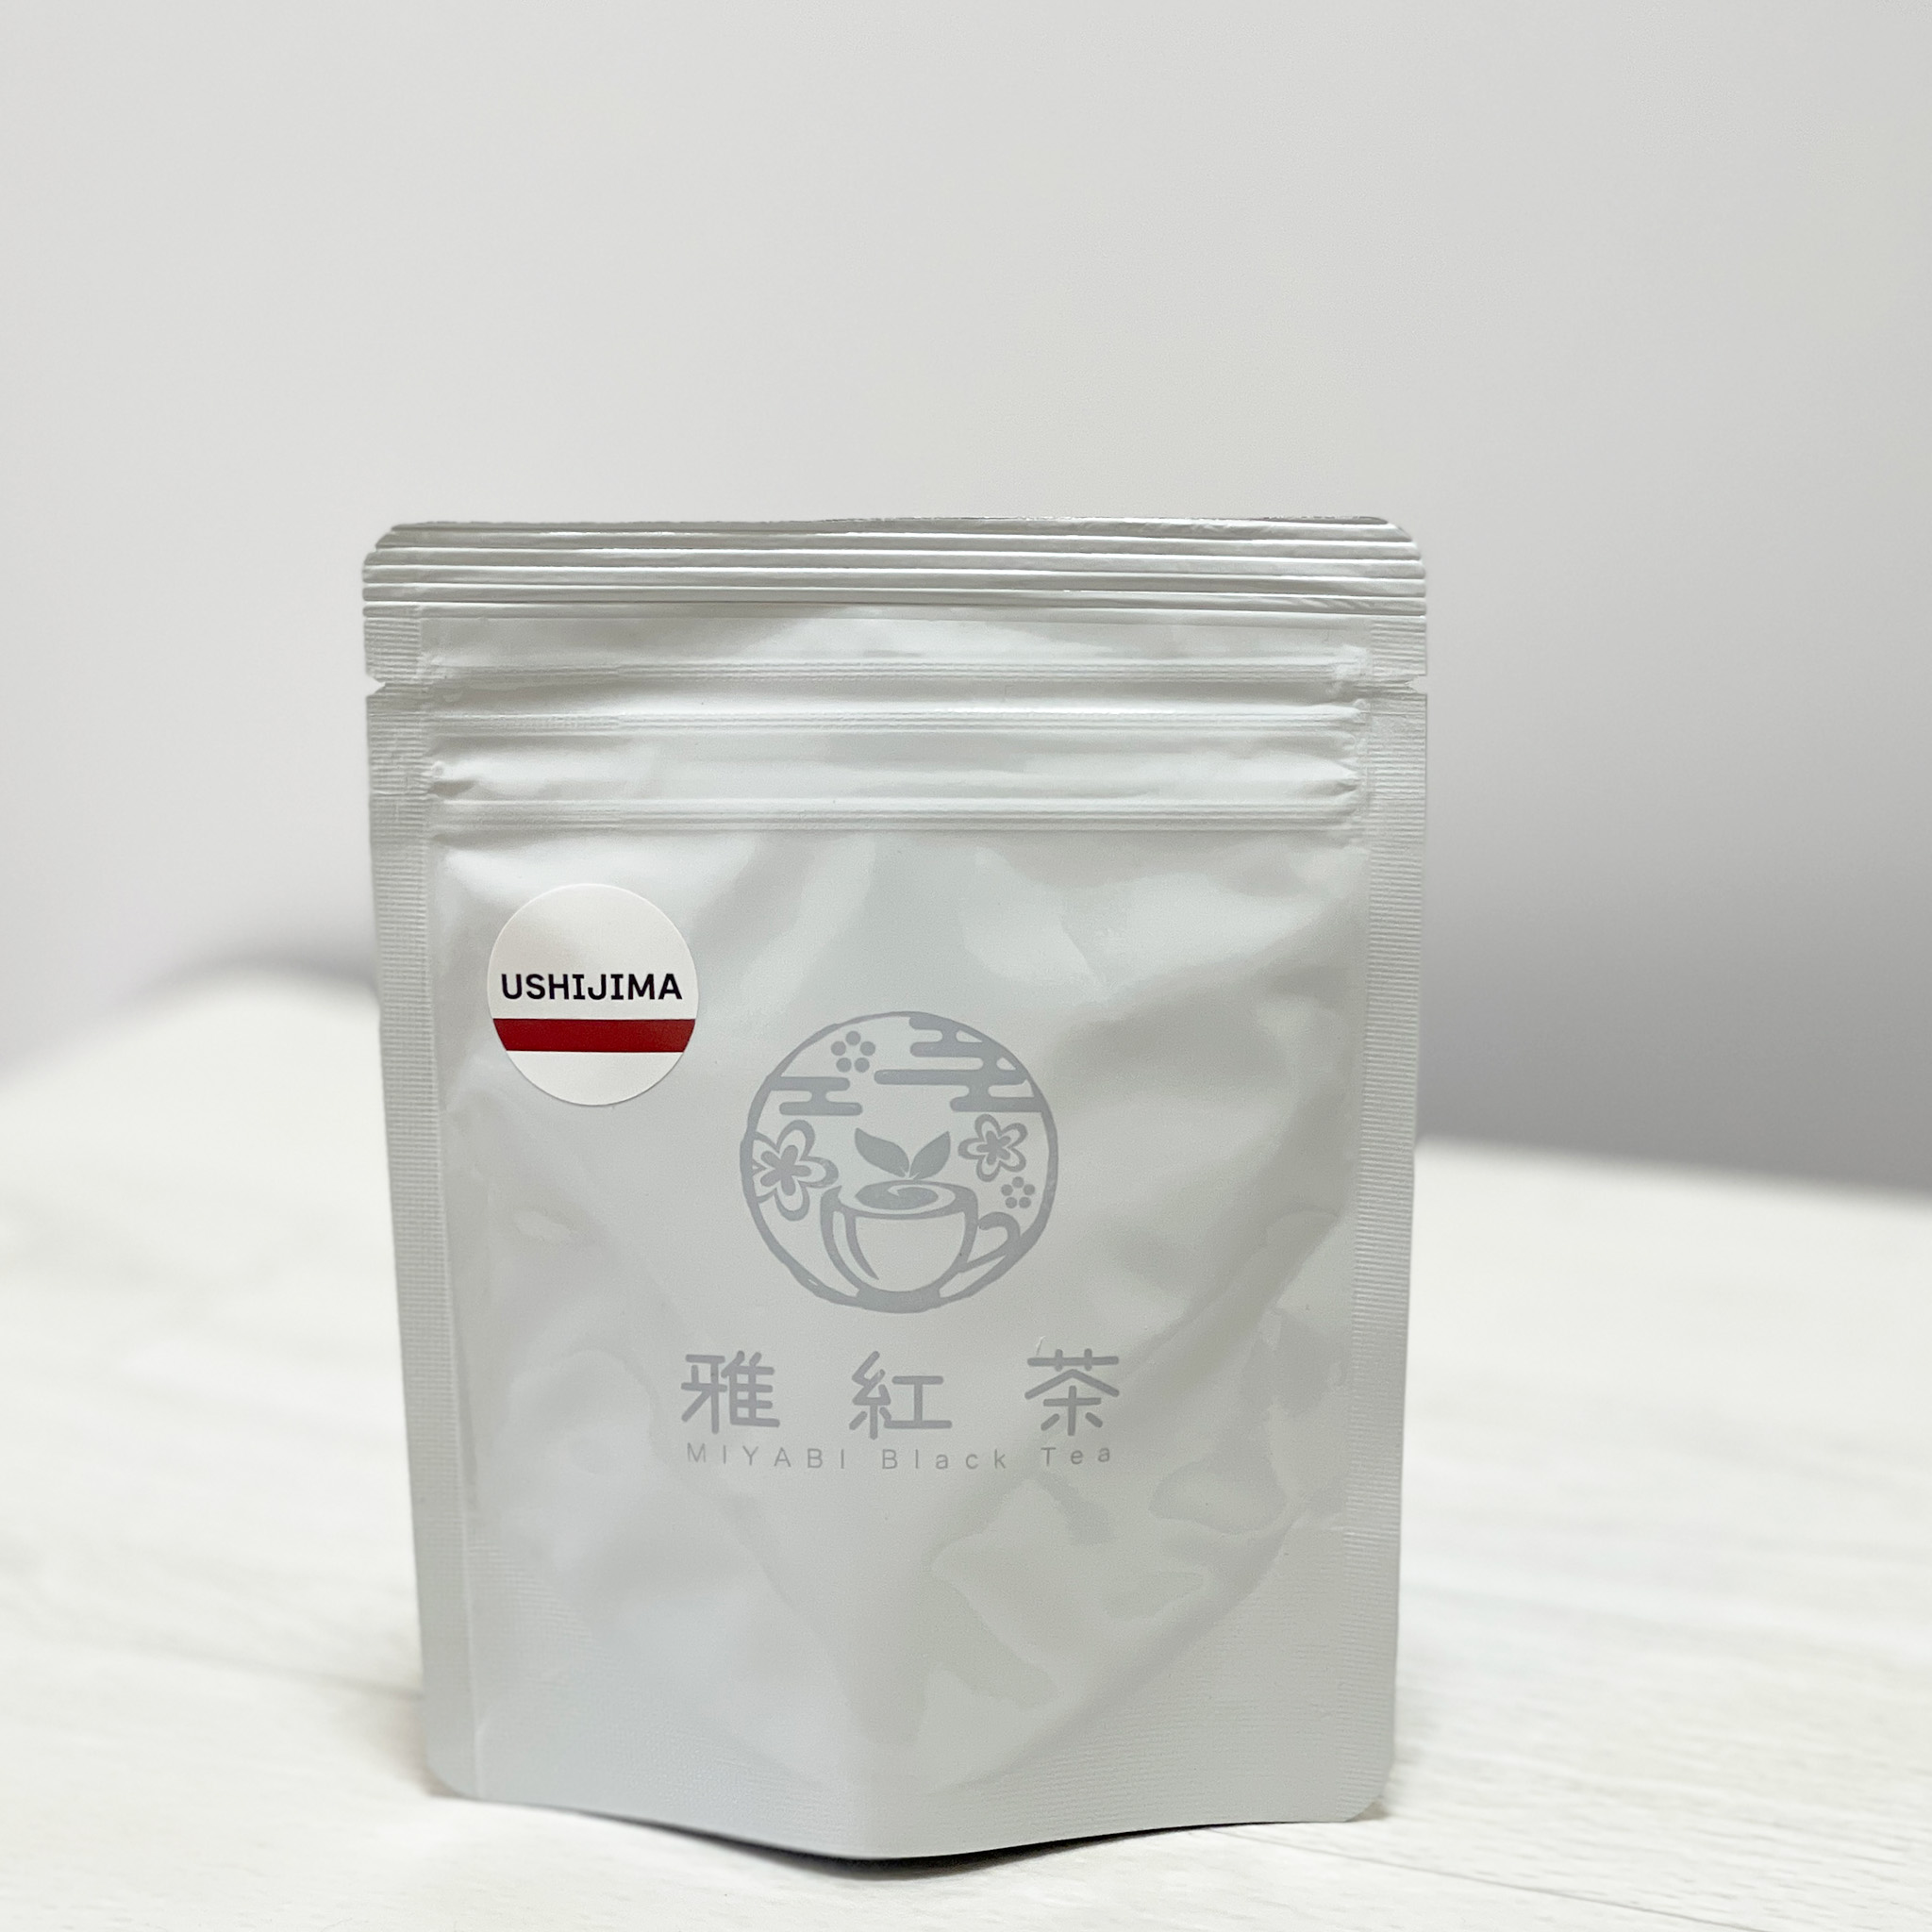 送料無料 日本で栽培加工された紅茶 和紅茶 国内在庫 熱販売 雅紅茶 USHIJIMA ティーバッグ